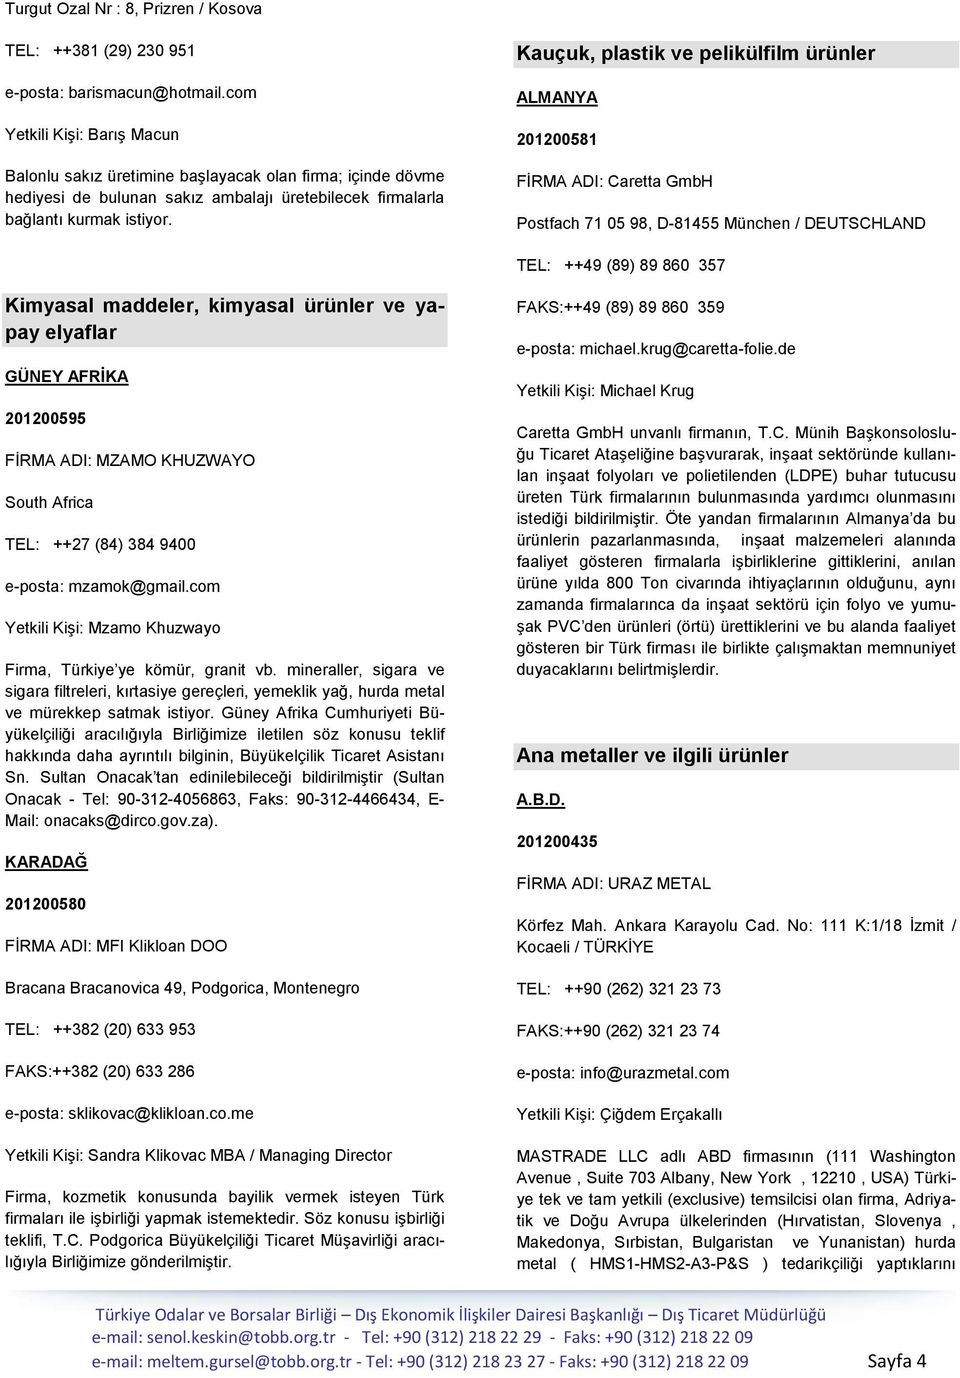 Kauçuk, plastik ve pelikülfilm ürünler ALMANYA 201200581 FĠRMA ADI: Caretta GmbH Postfach 71 05 98, D-81455 München / DEUTSCHLAND TEL: ++49 (89) 89 860 357 Kimyasal maddeler, kimyasal ürünler ve